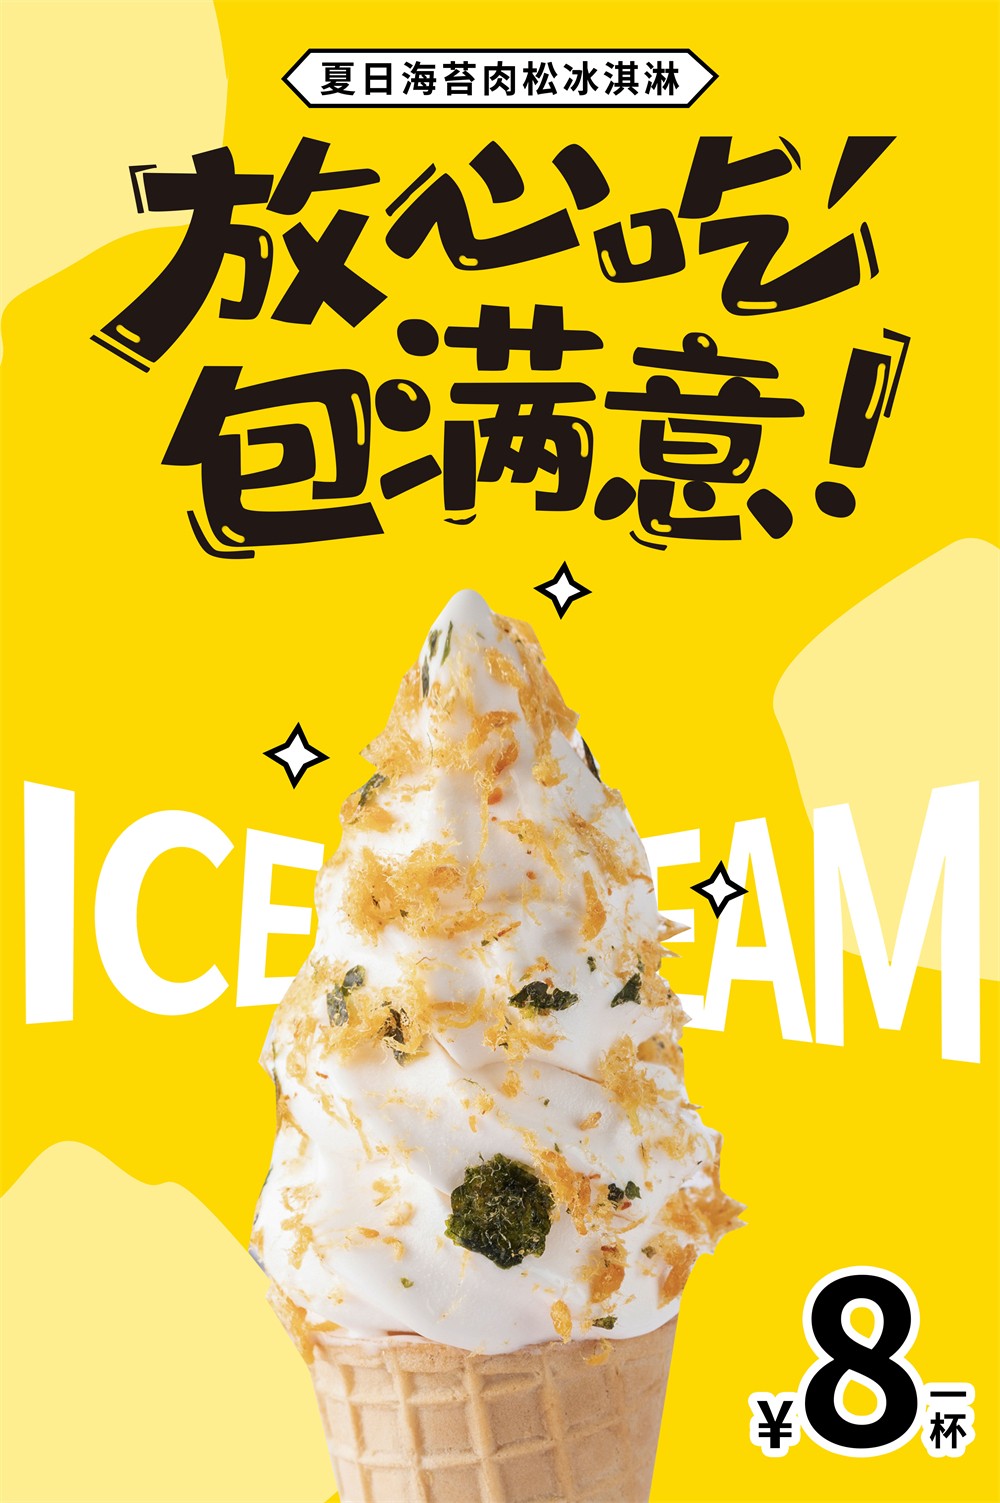 夏日海苔肉松冰淇淋广告海报设计